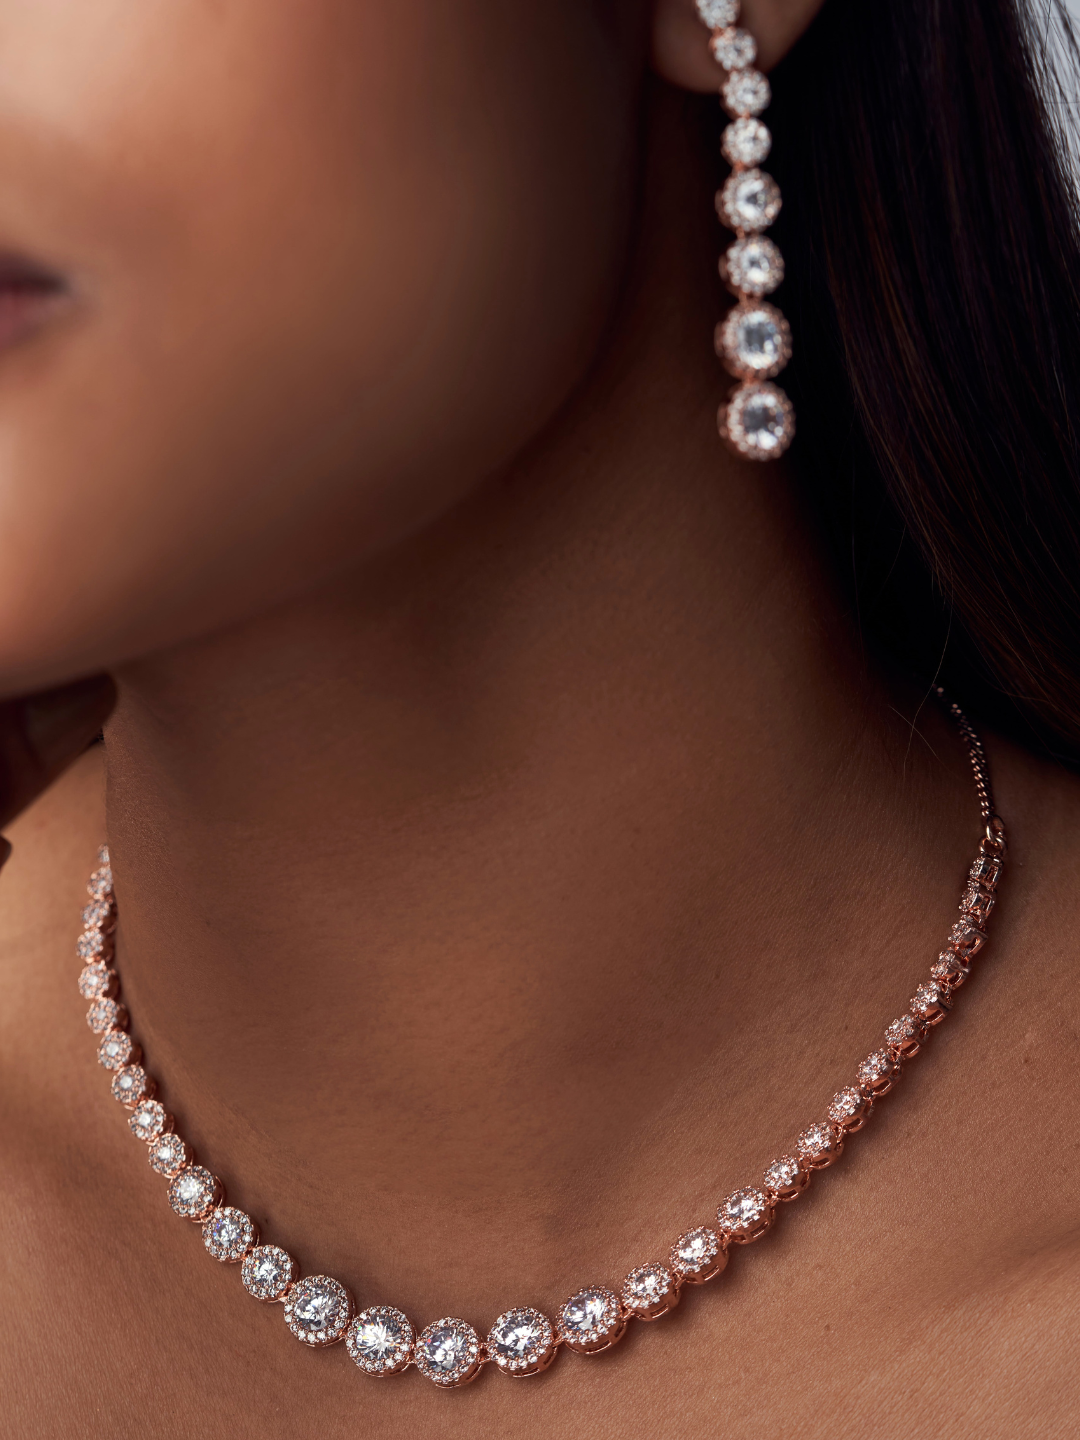 Blushing Beauty Necklace - Zeraki Jewels 